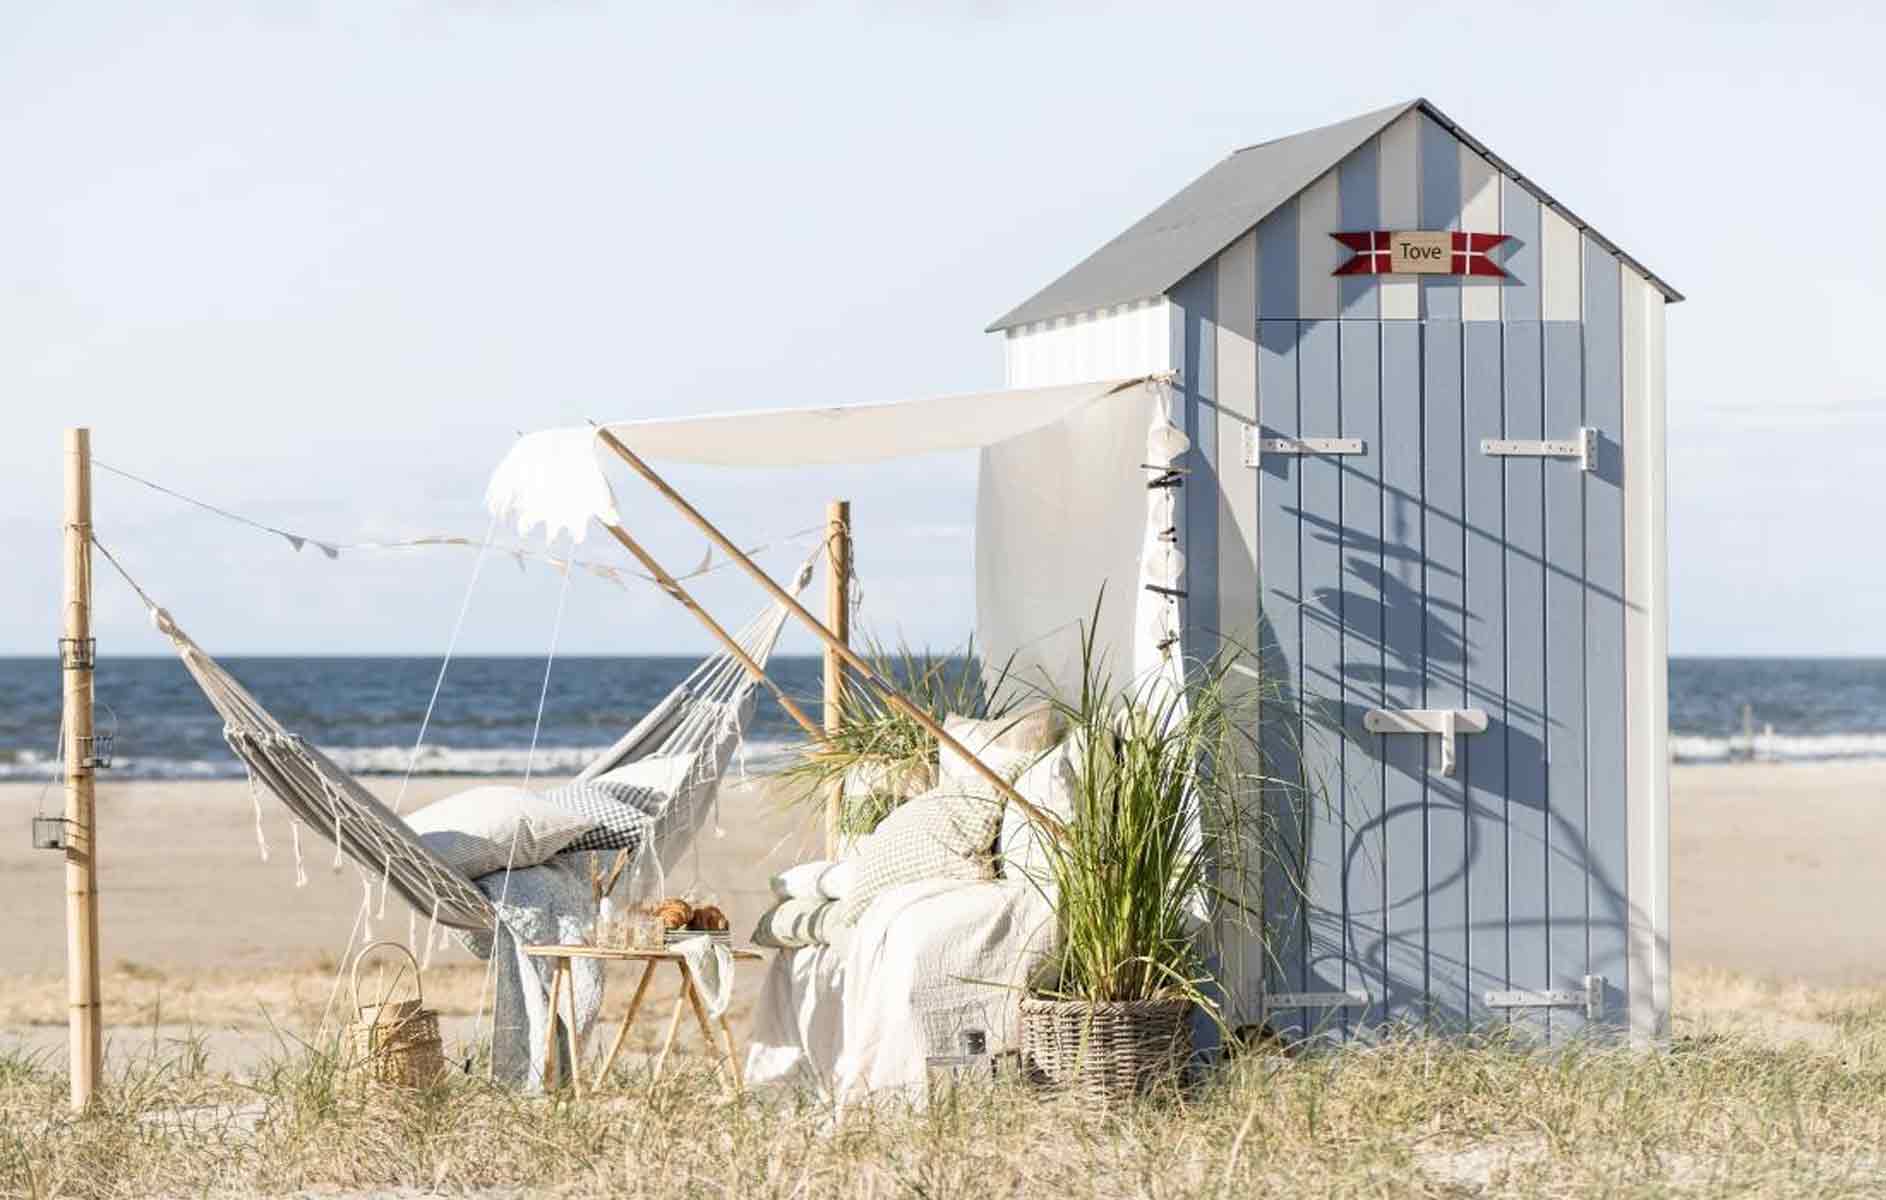 Eine ruhige Strandkulisse mit einem kleinen Strandhaus mit der Aufschrift „Tiki-Bar“, einer Hängematte und gemütlichen Sitzgelegenheiten, umgeben von Topfpflanzen und einem weißen Stoffbehang.